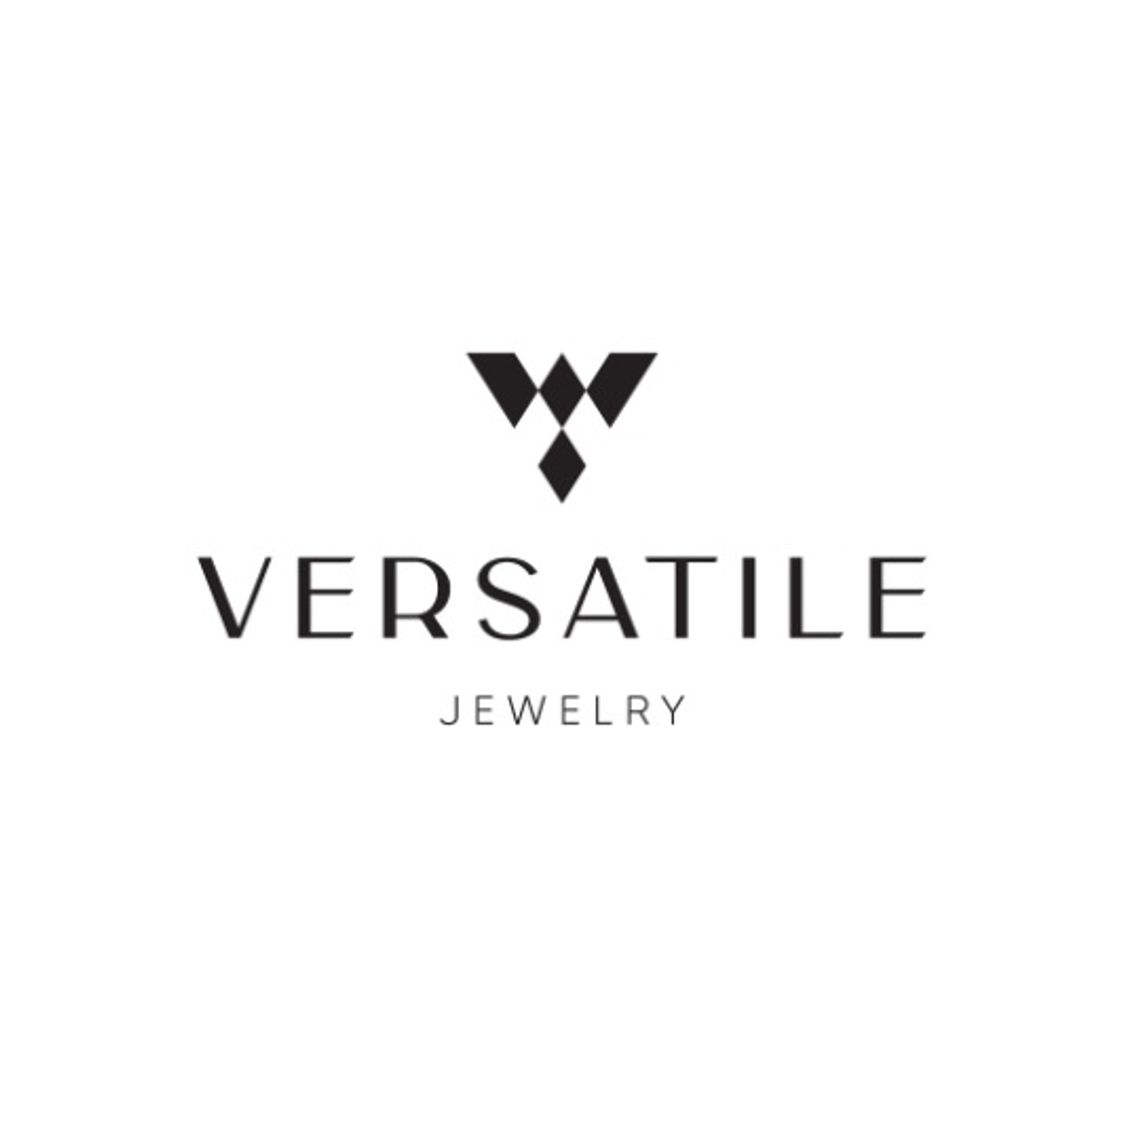 Versatile - wyjątkowa biżuteria dla niego i dla niej